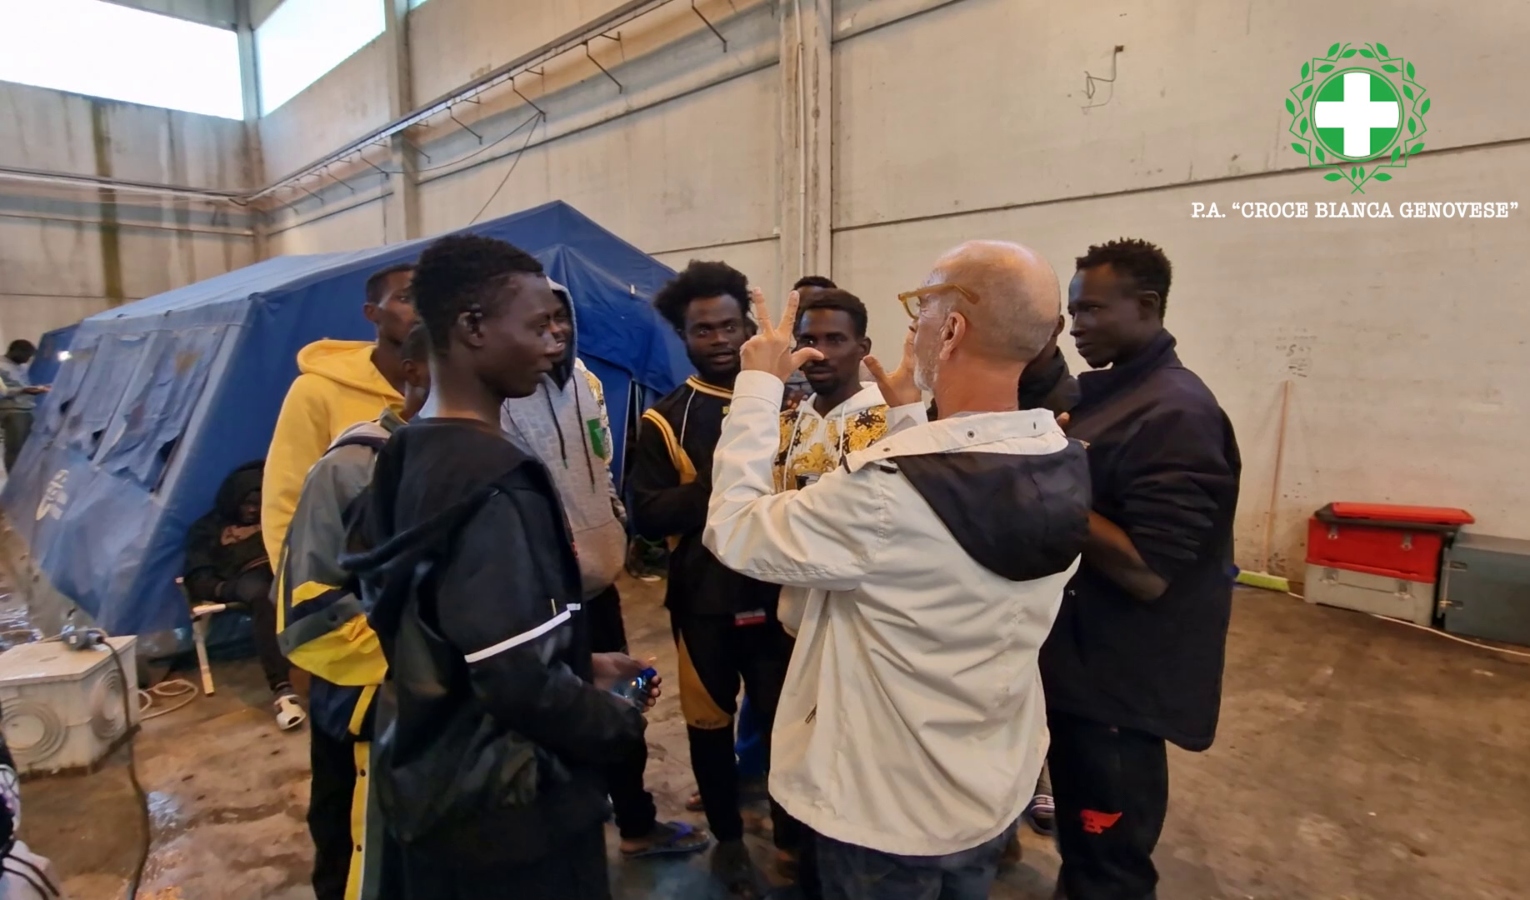 Croce Bianca Genovese vs migranti: è tempo di partita di calcio